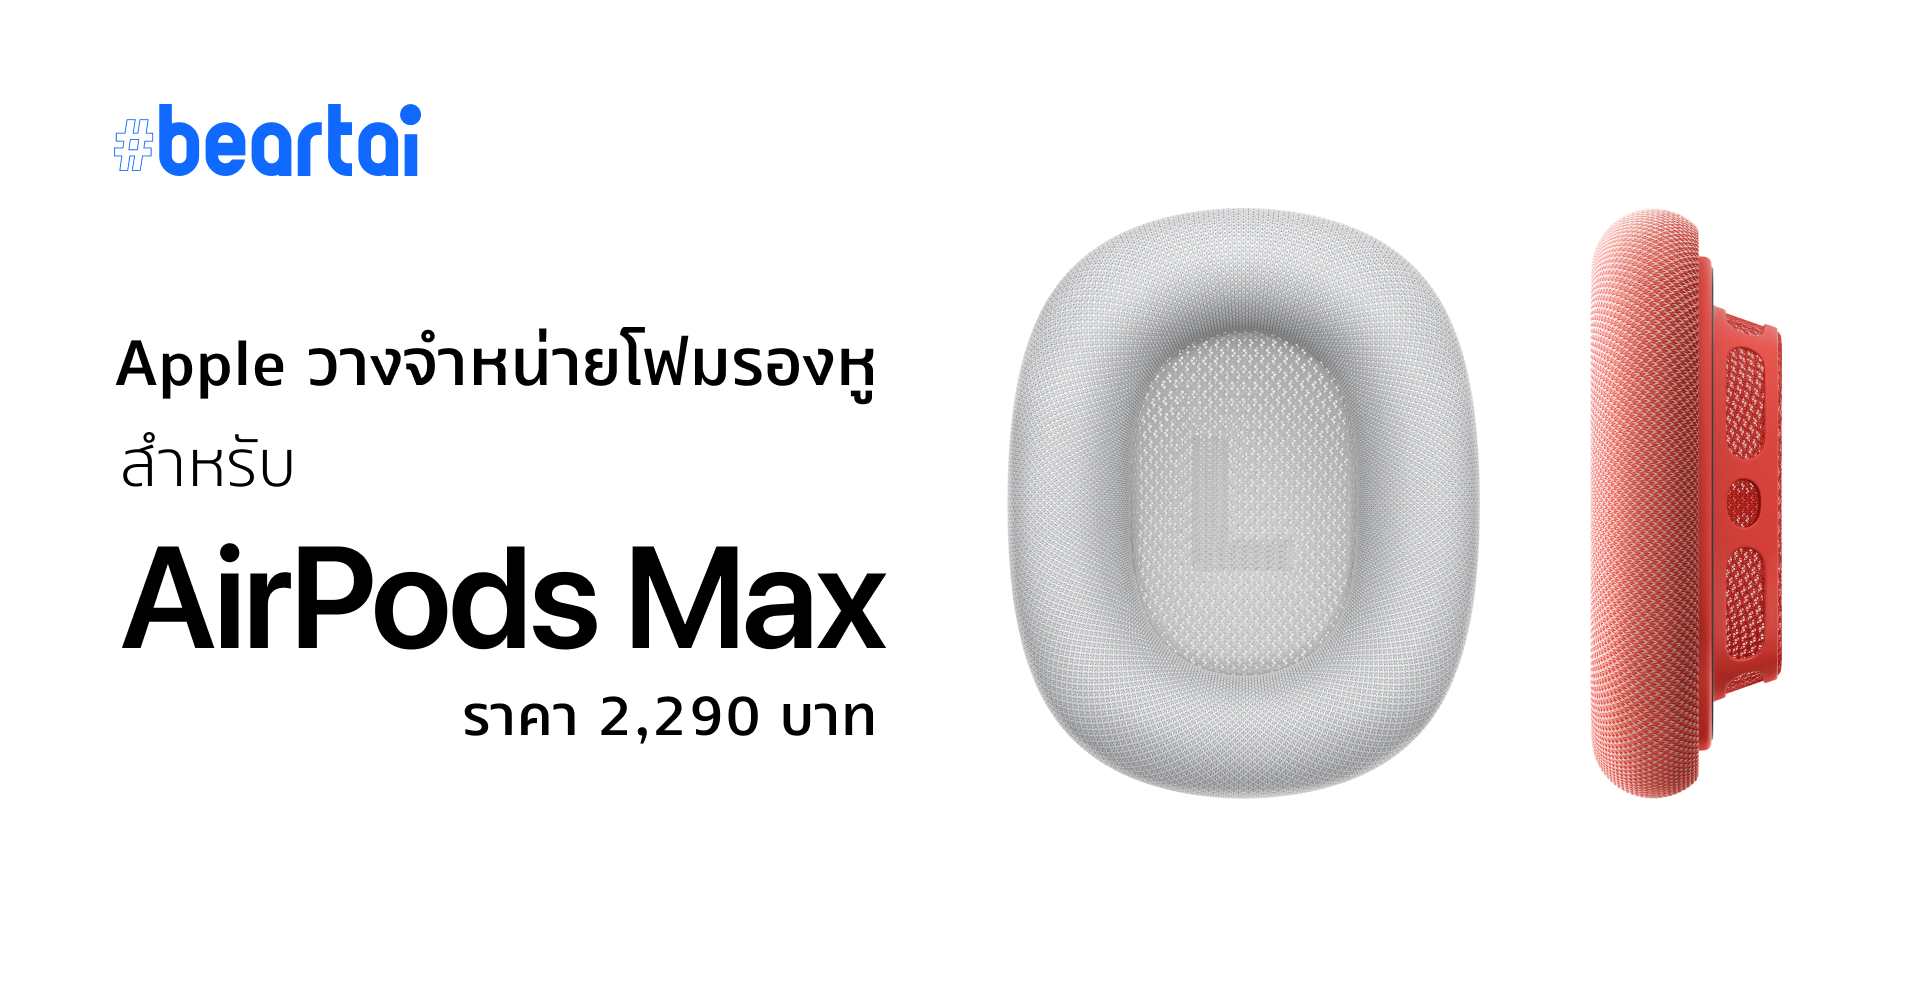 เท่านั้นไม่พอ Apple วางขายโฟมรองหูสำหรับ AirPods Max ให้ไป MixMatch ได้ในราคาคู่ละ 2290 บาท